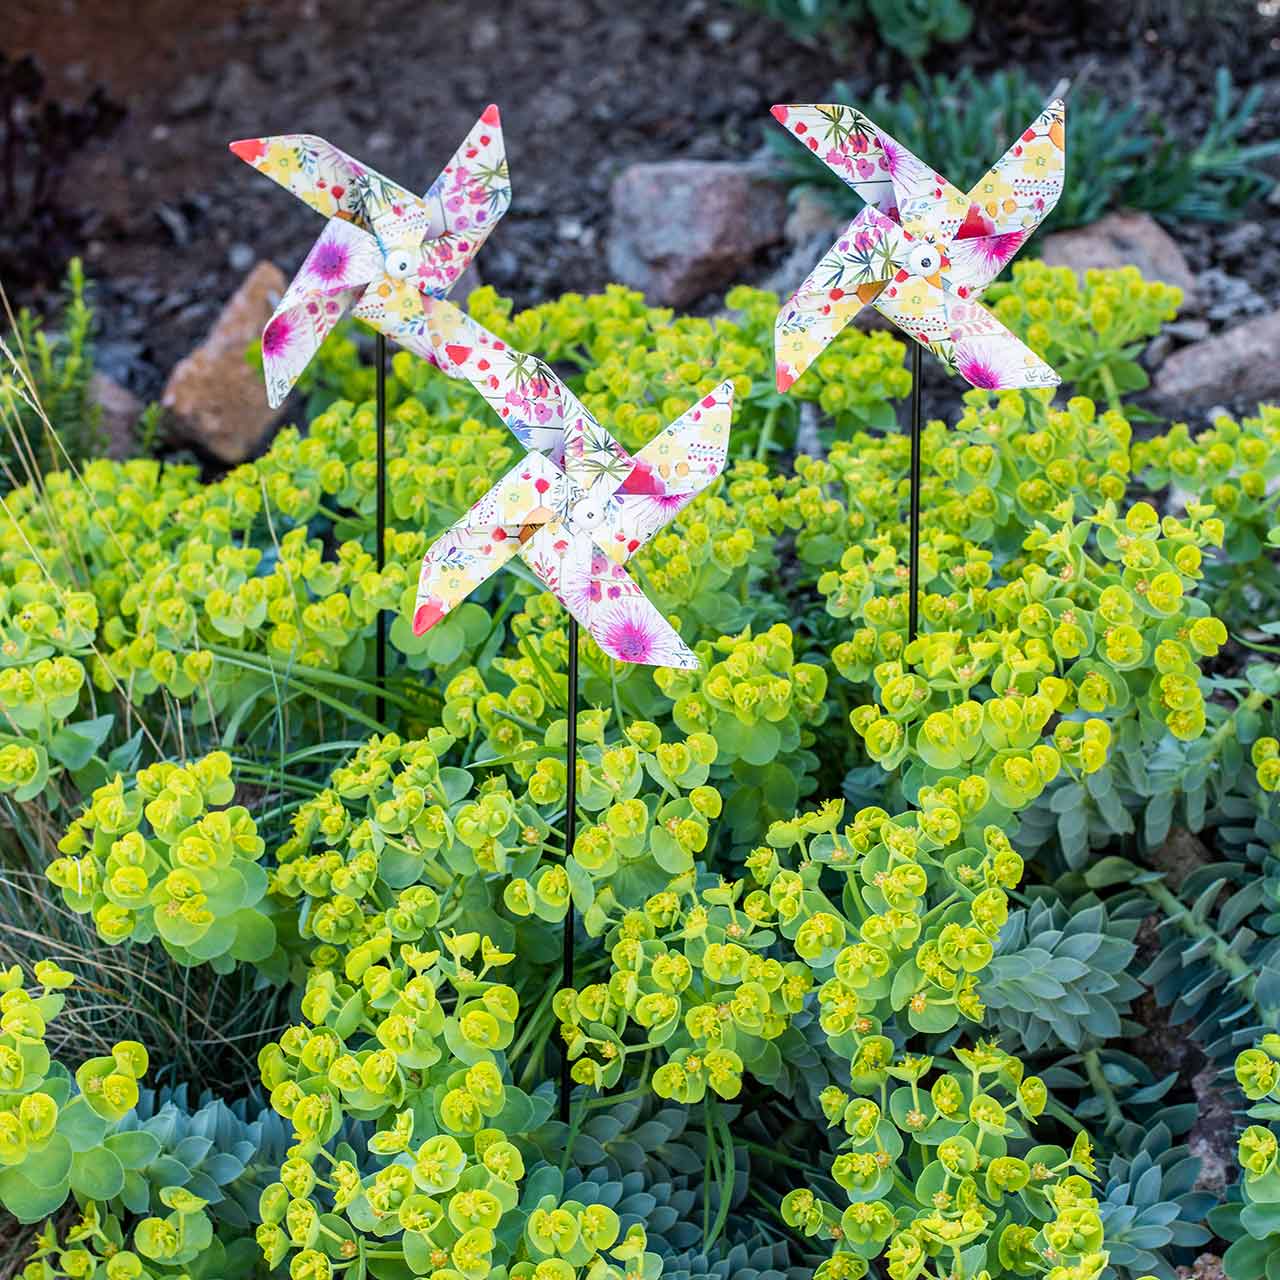 Windmühlen für Kinderspielzeug, 10pcs Plastikpfingstrosen Blumen Feuerrad 